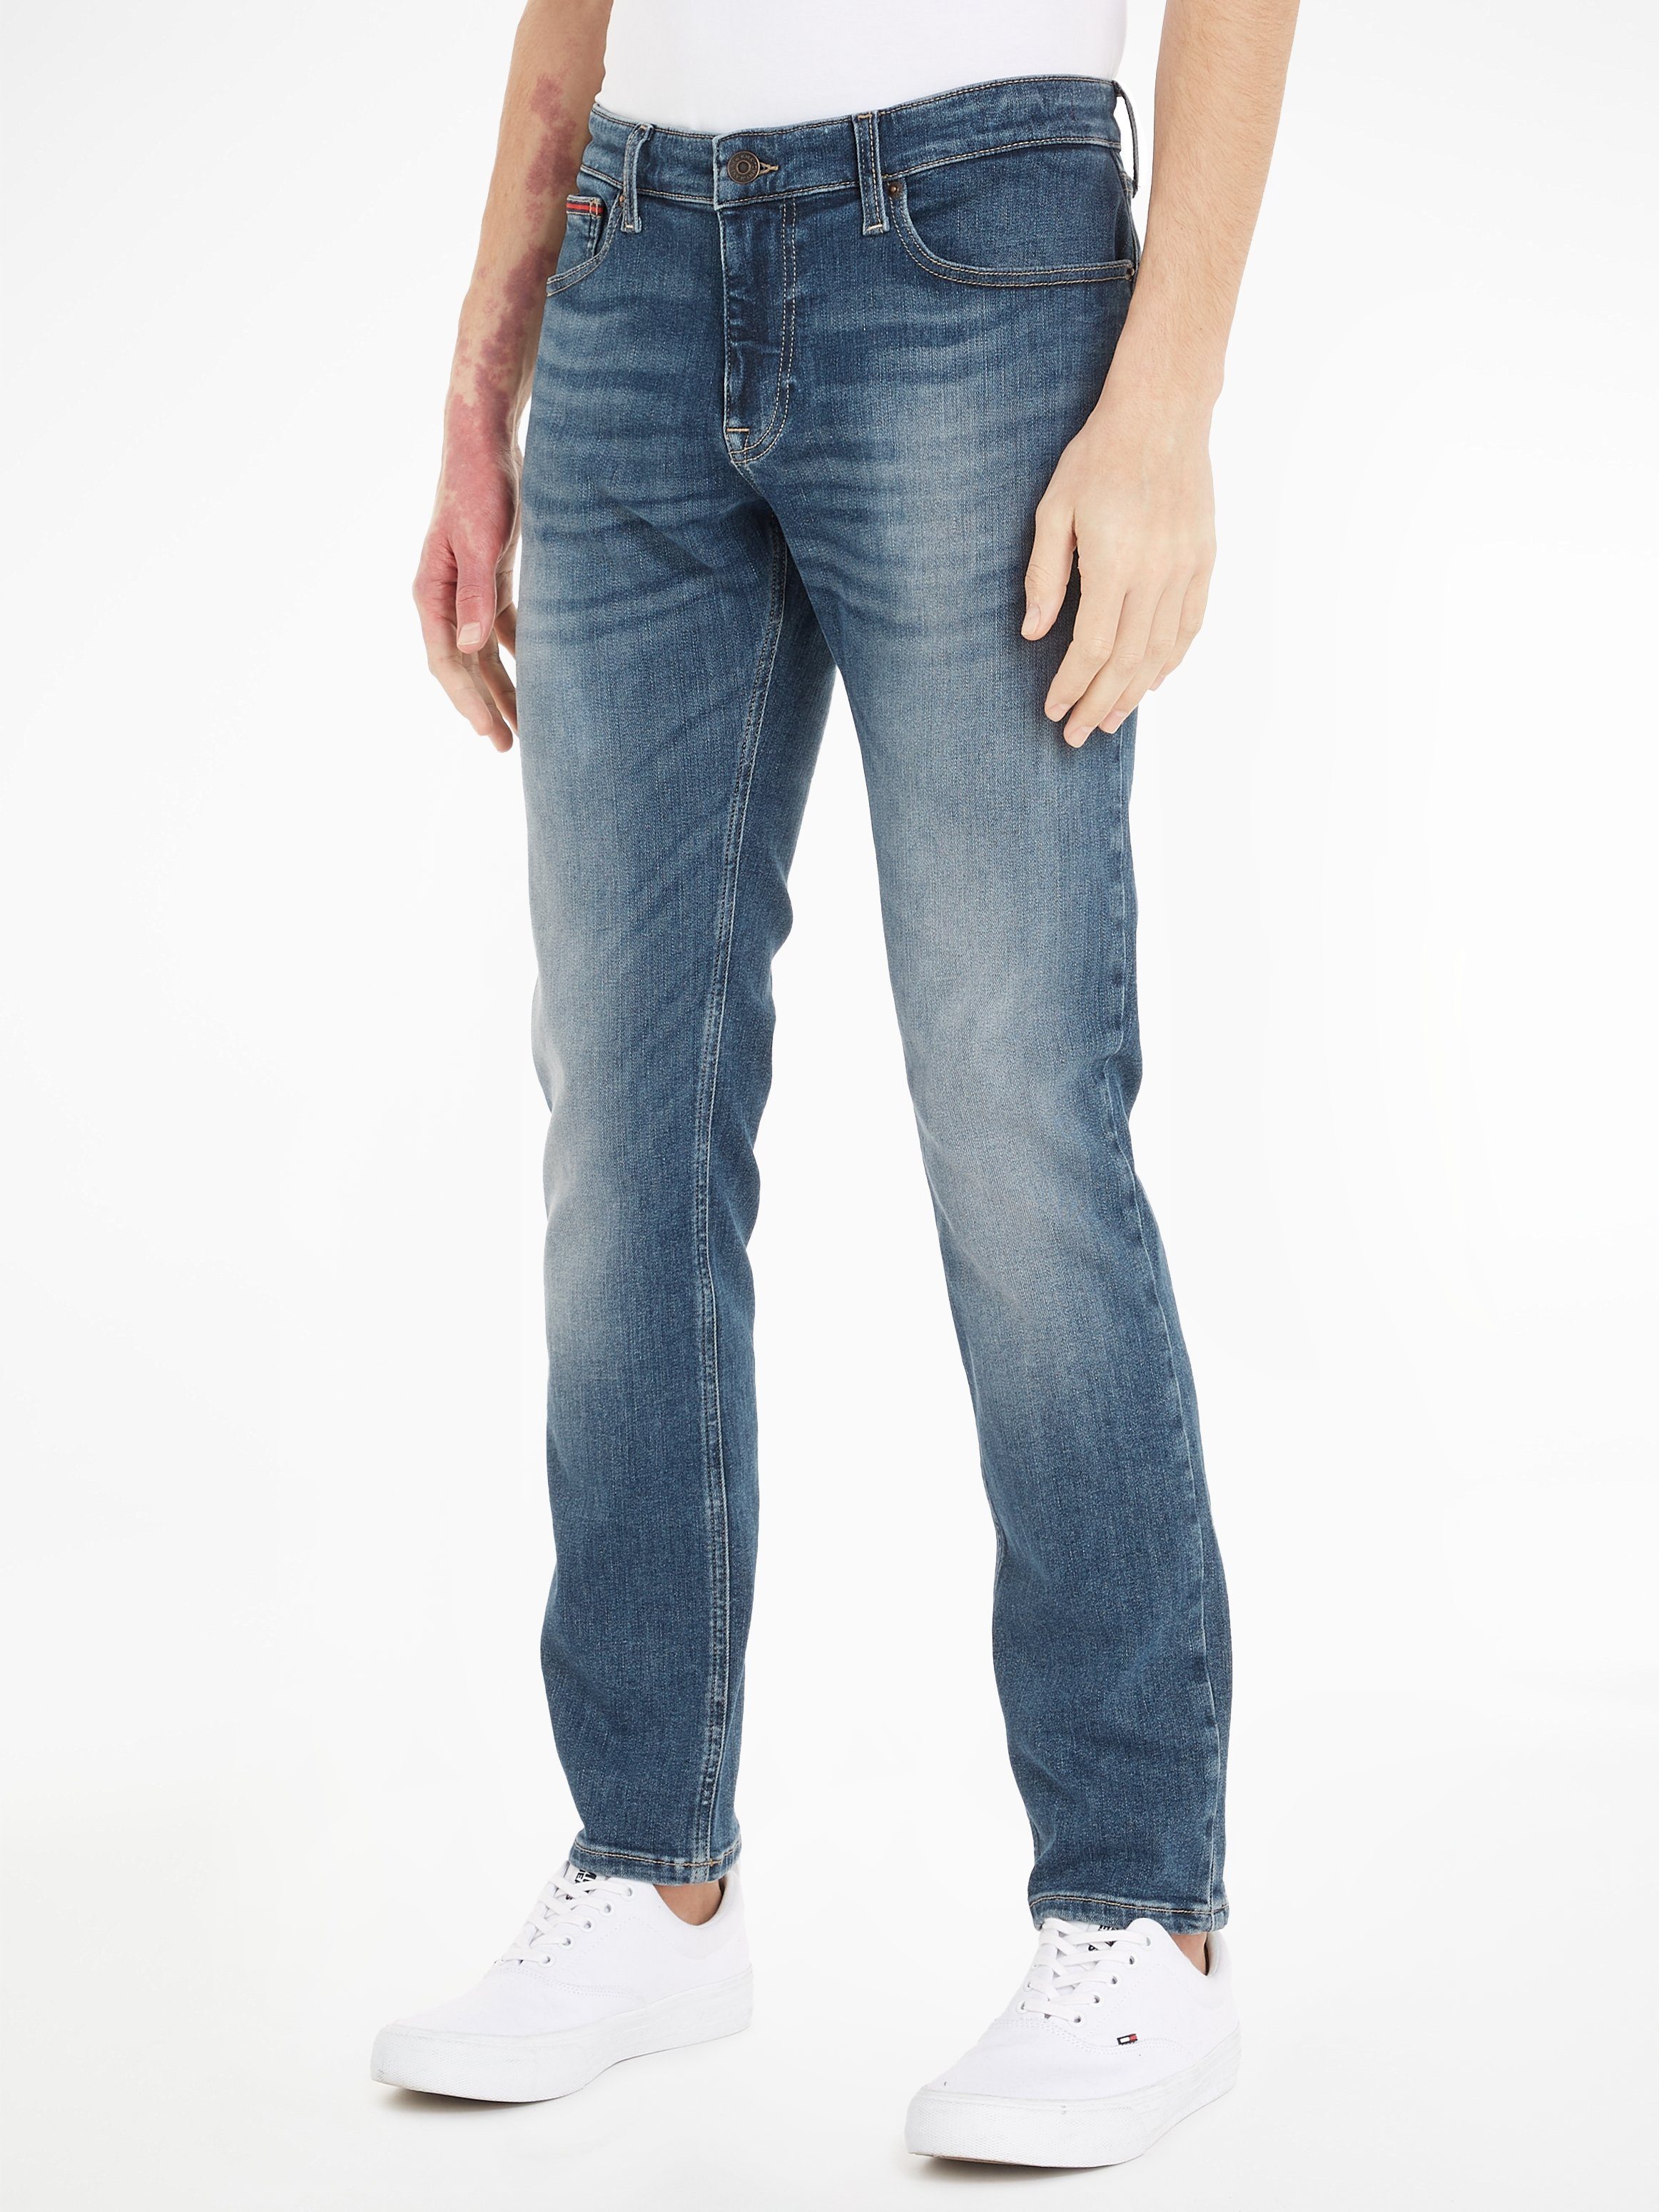 Tommy Jeans 5-Pocket-Jeans SCANTON SLIM